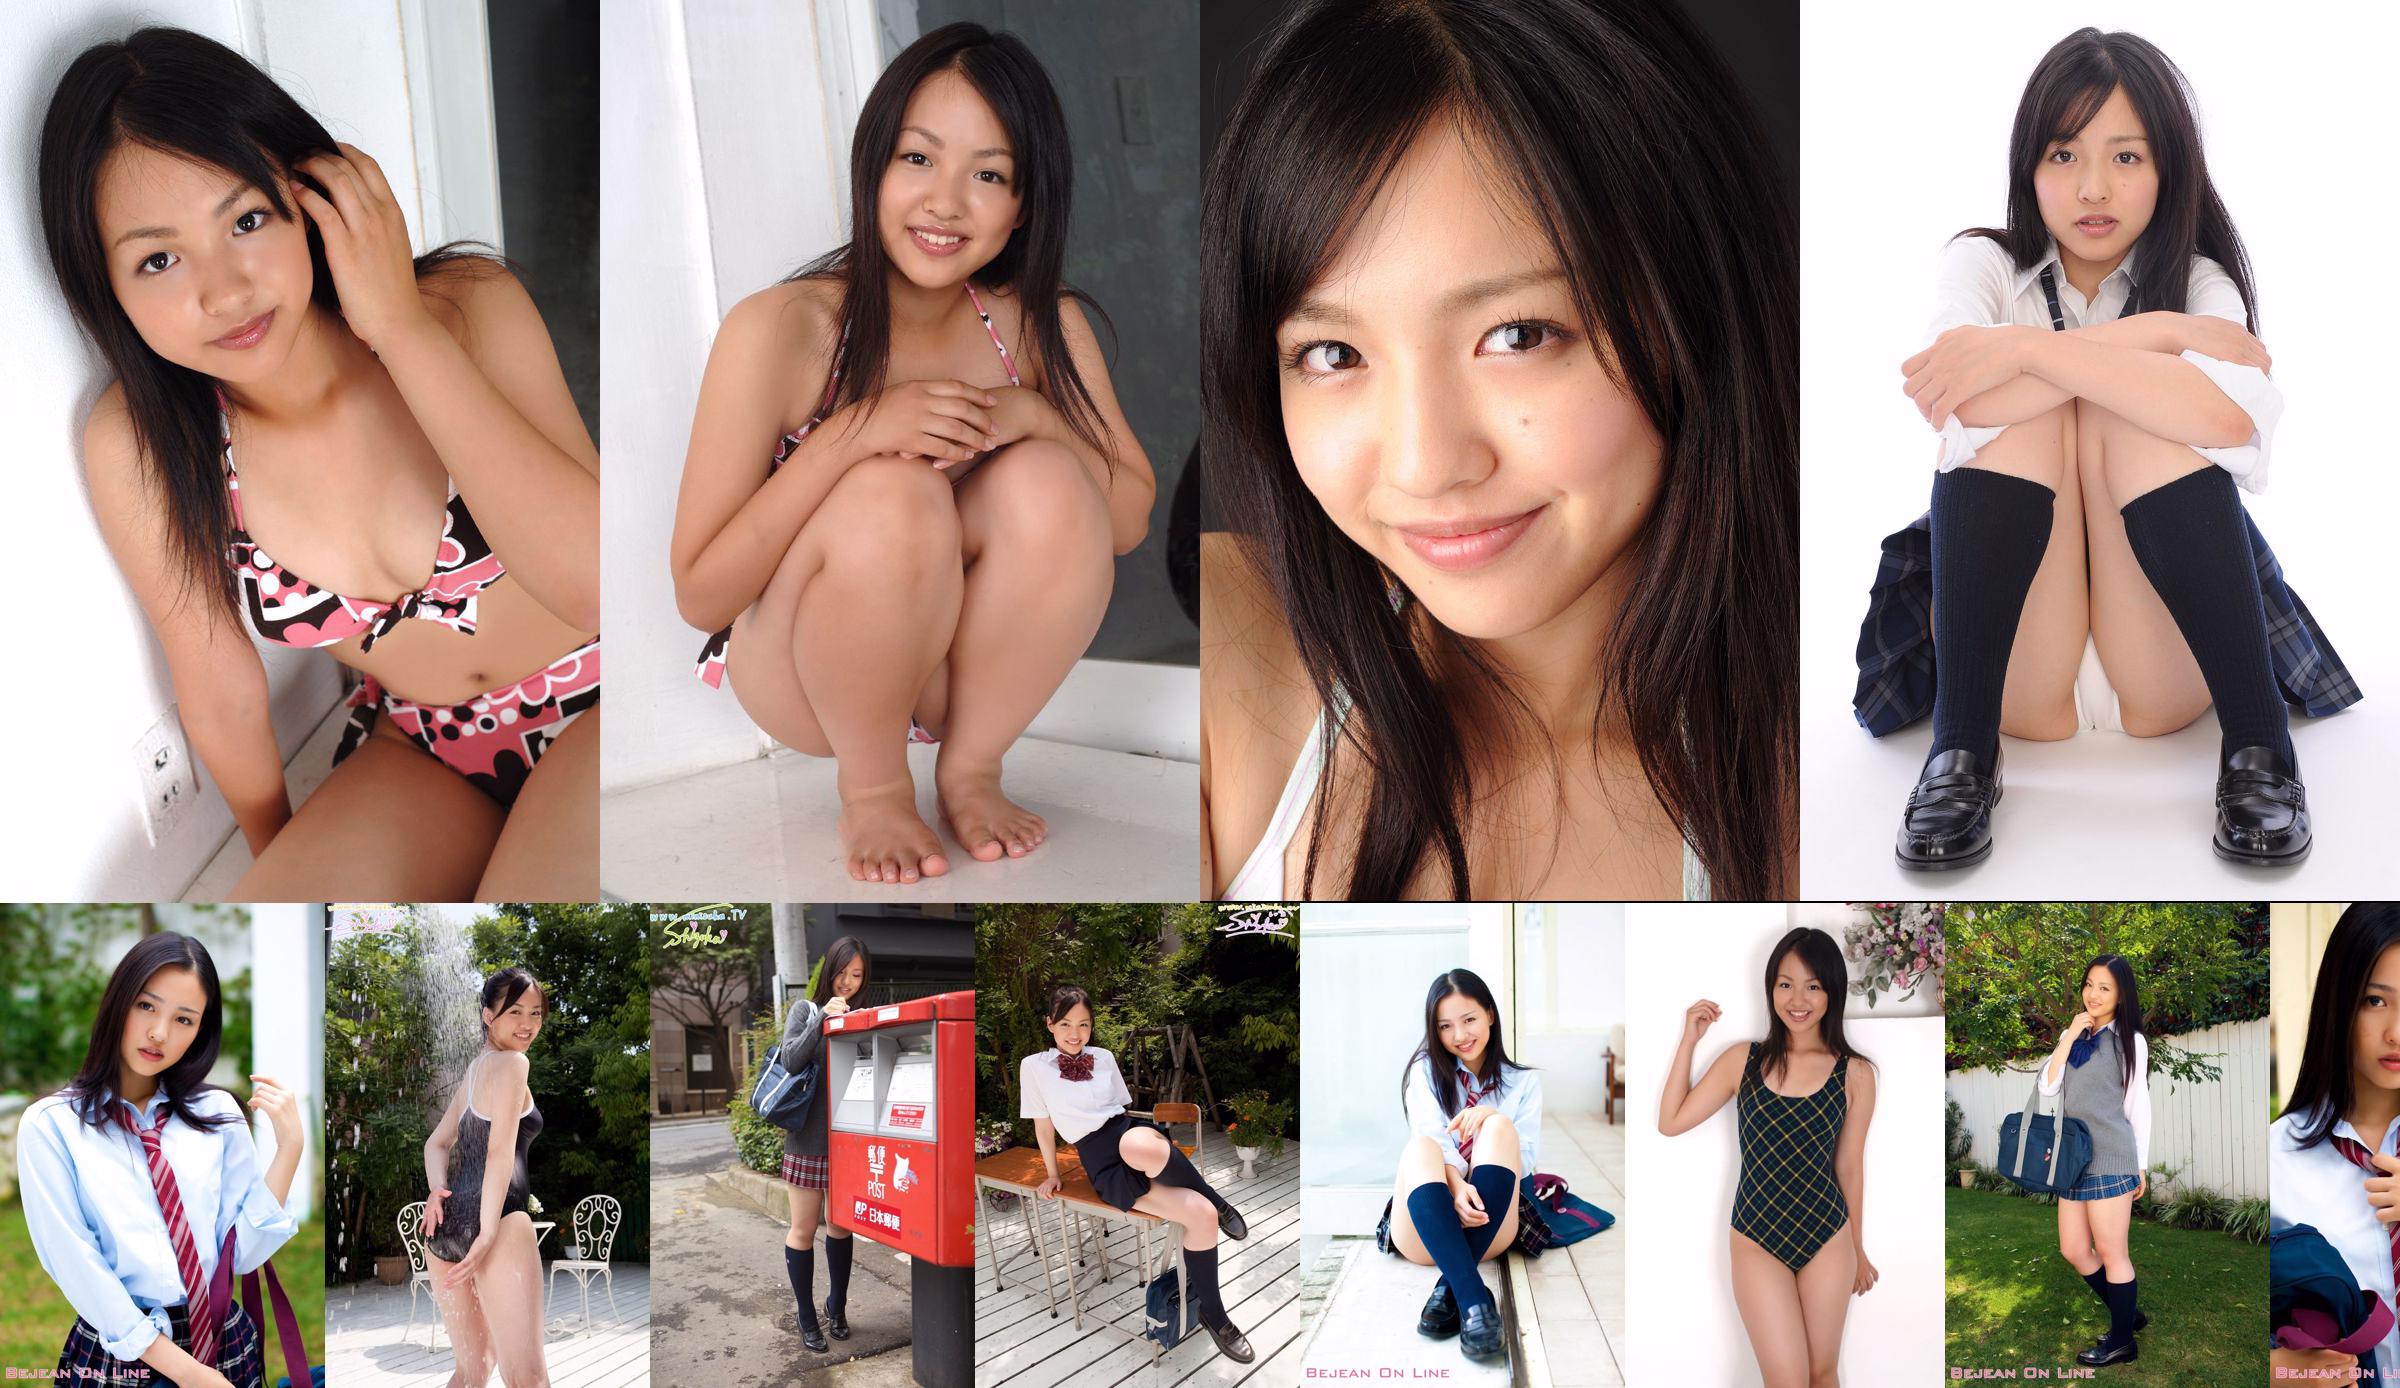 โรงเรียนเอกชน Bejean Girls 'Shizuka Shizuka / Miyazawa Shizuka [Bejean On Line] No.91f4bf หน้า 1